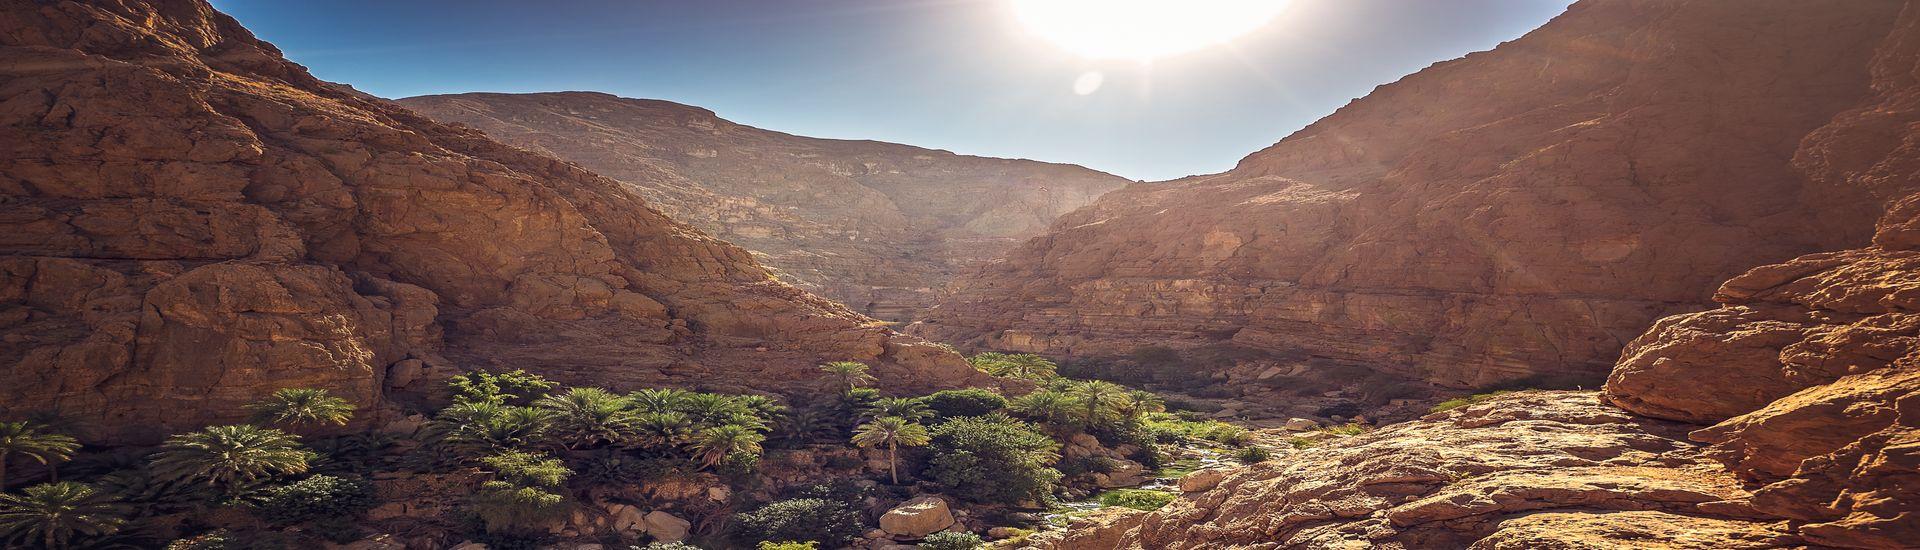 Oman - perła Półwyspu Arabskiego